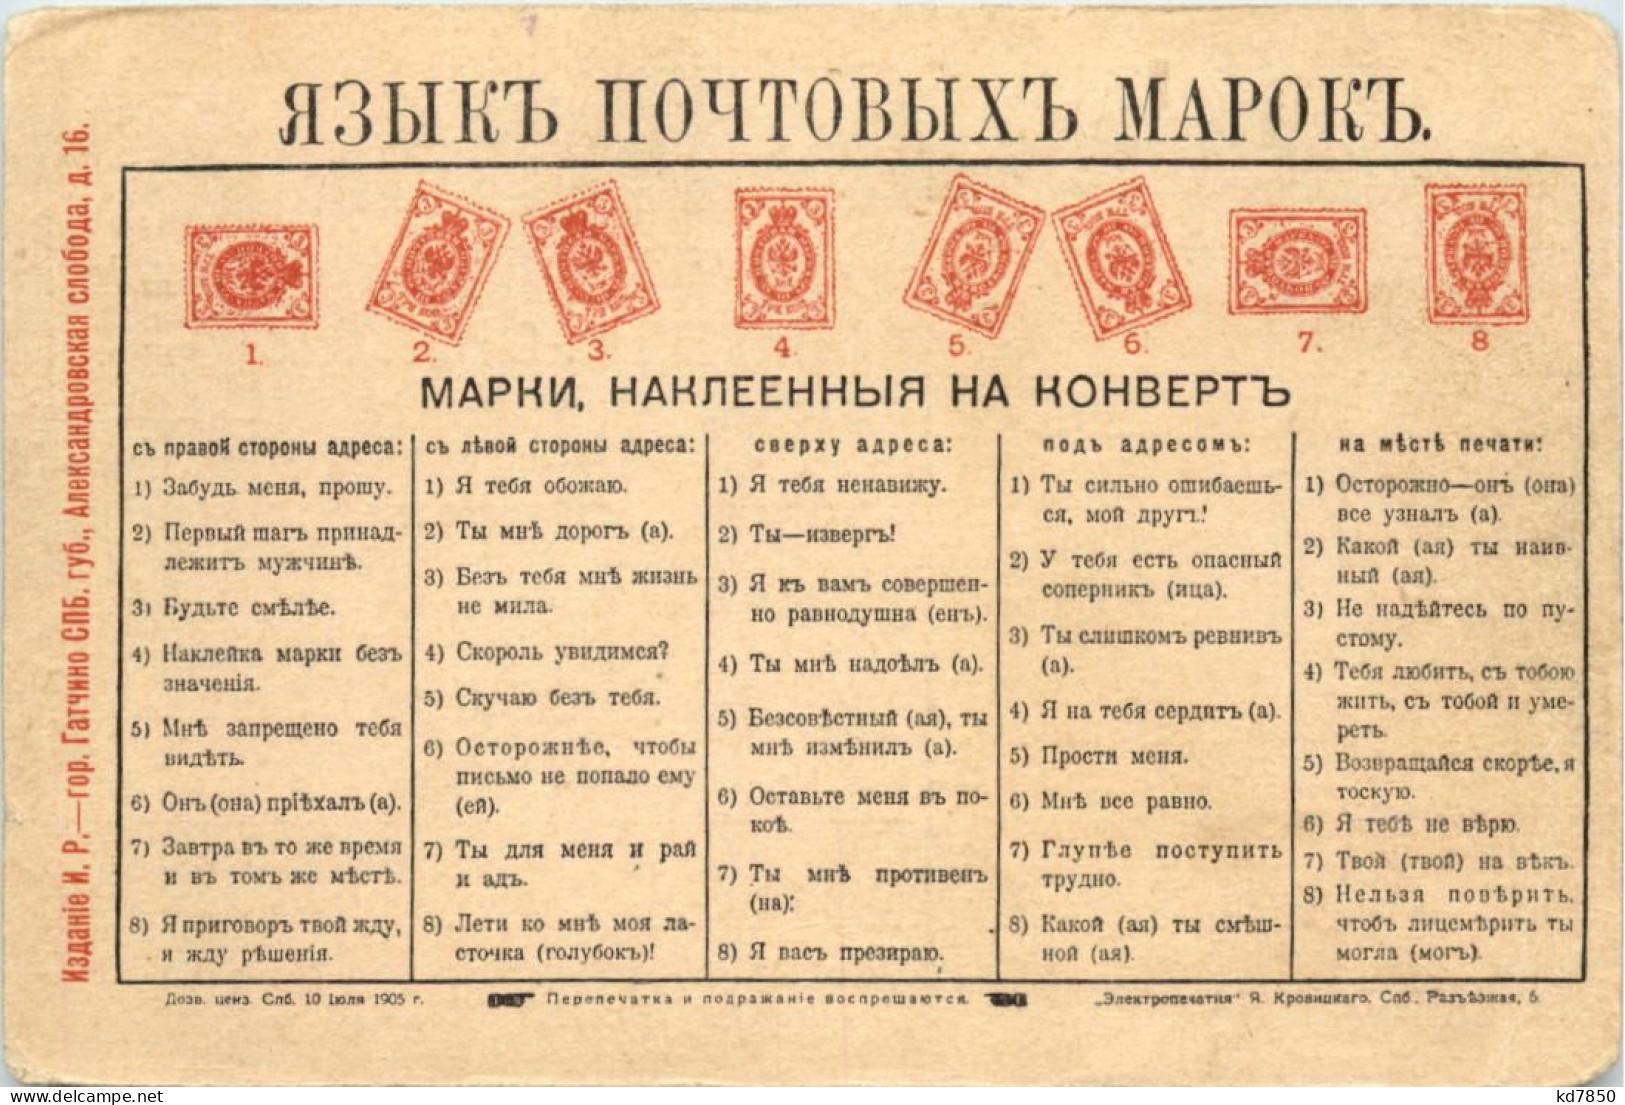 Russia - Breifmarkensprache - Briefmarken (Abbildungen)